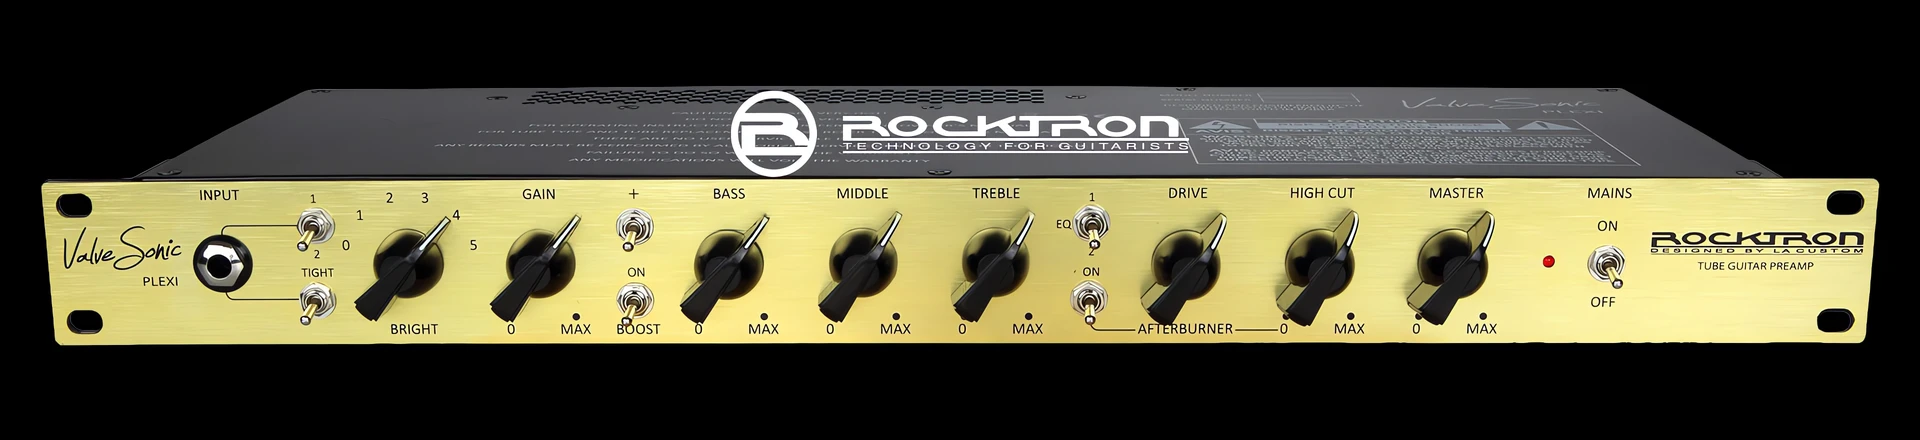 Rocktron prezentuje preamp gitarowy ValveSonic Plexi 